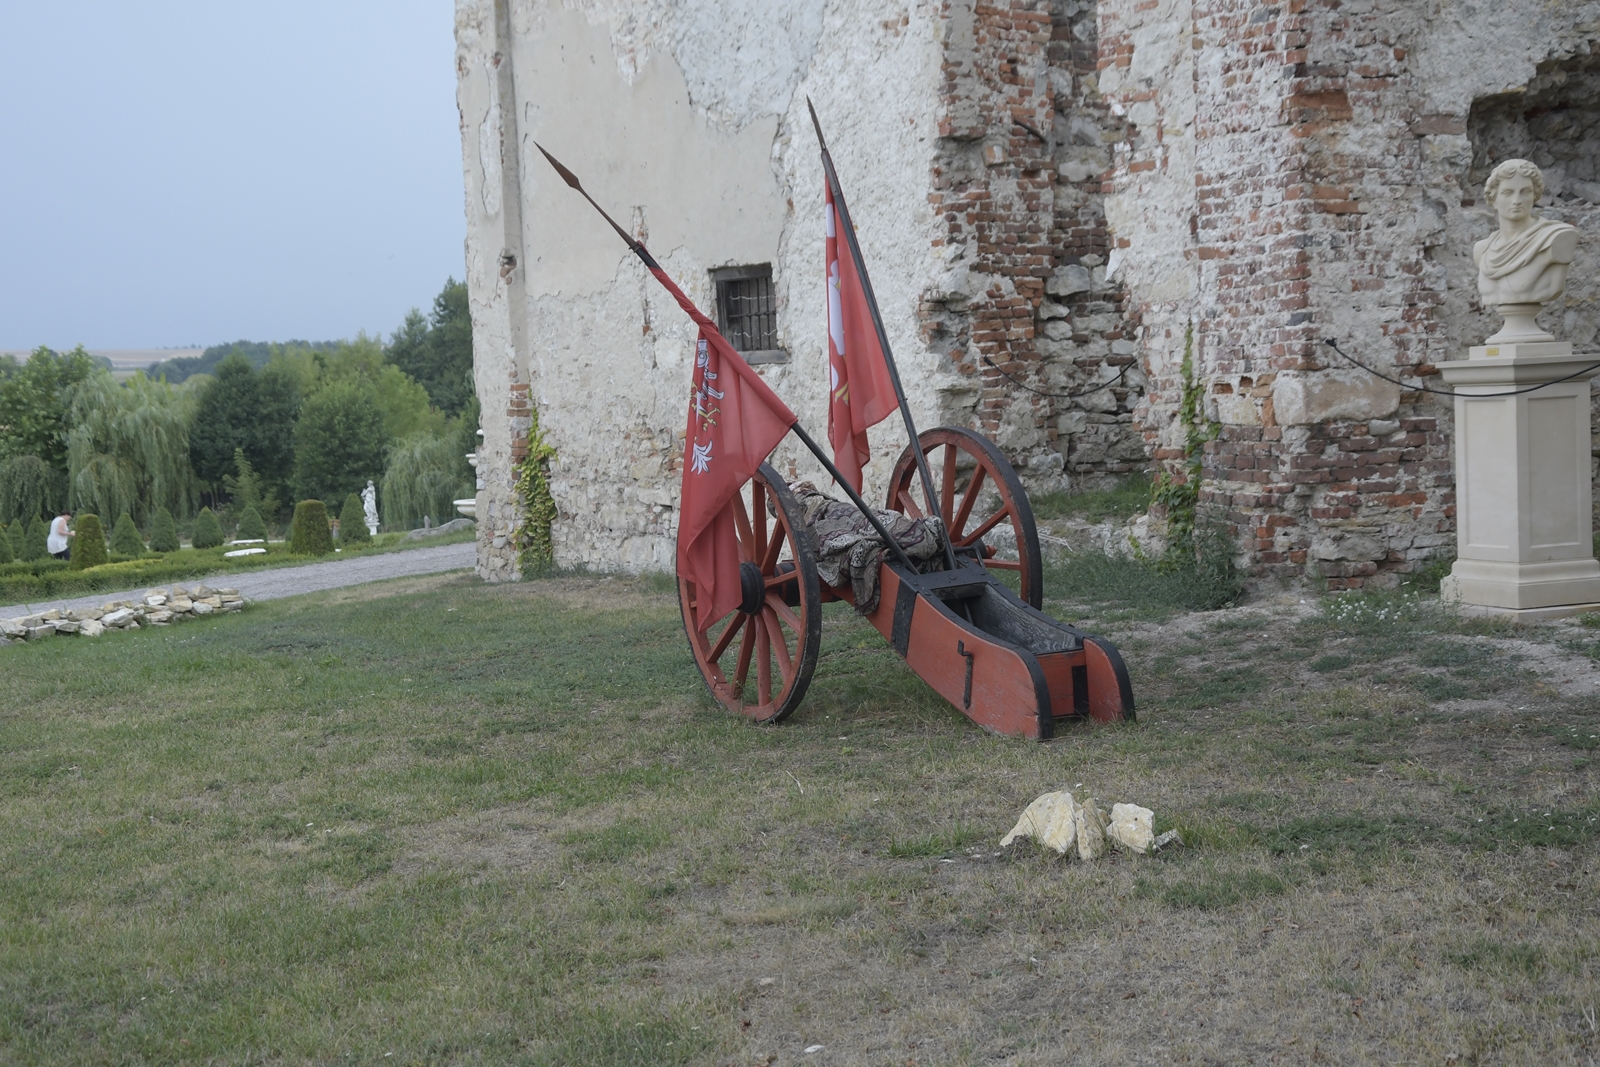 Armata na tle ruin zamku w Sobkowie.